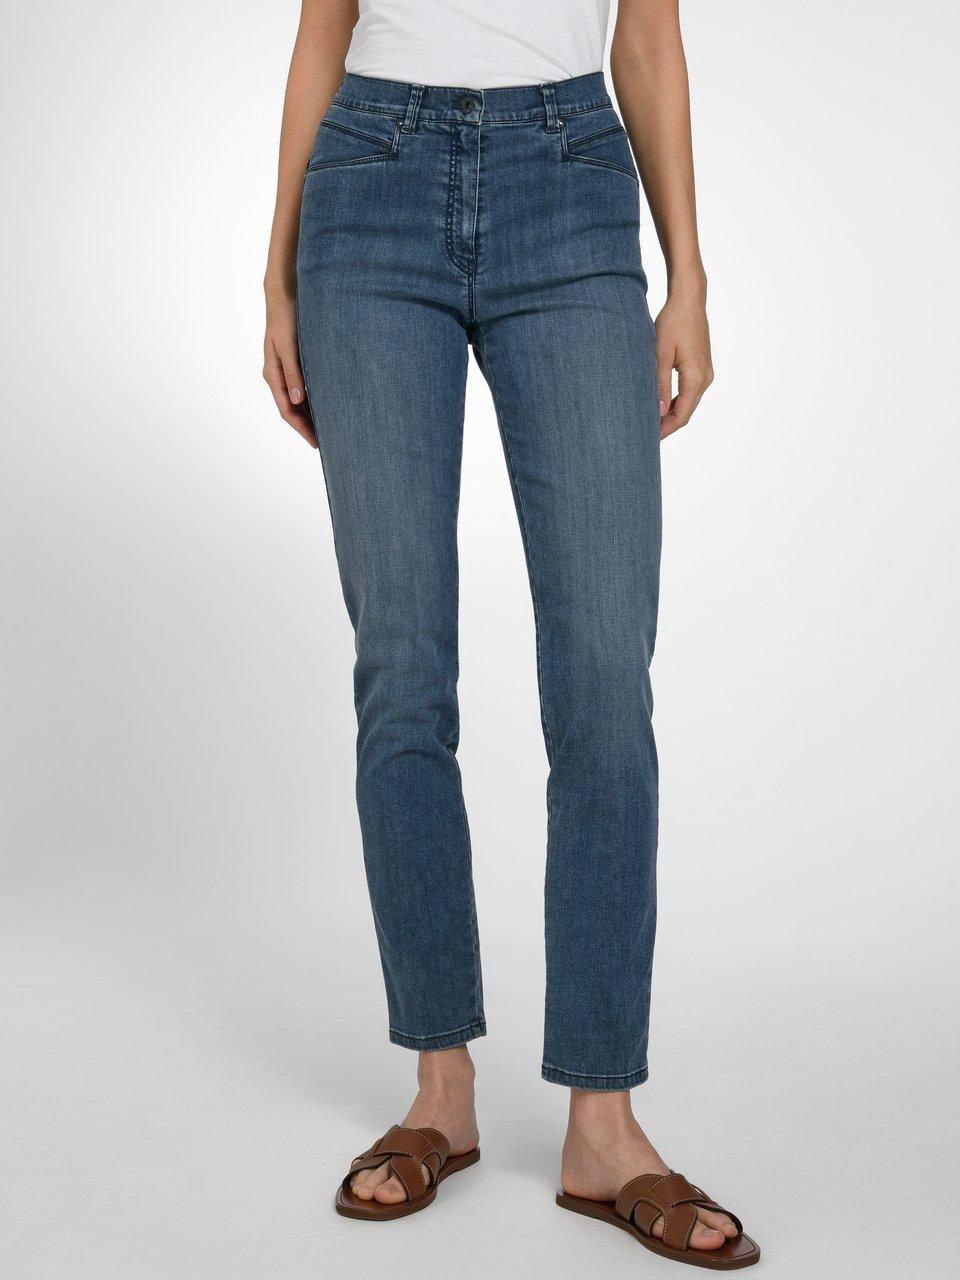 - blue Brax denim Caren Plus-Zauber-Jeans Modell by Dark Comfort - Raphaela